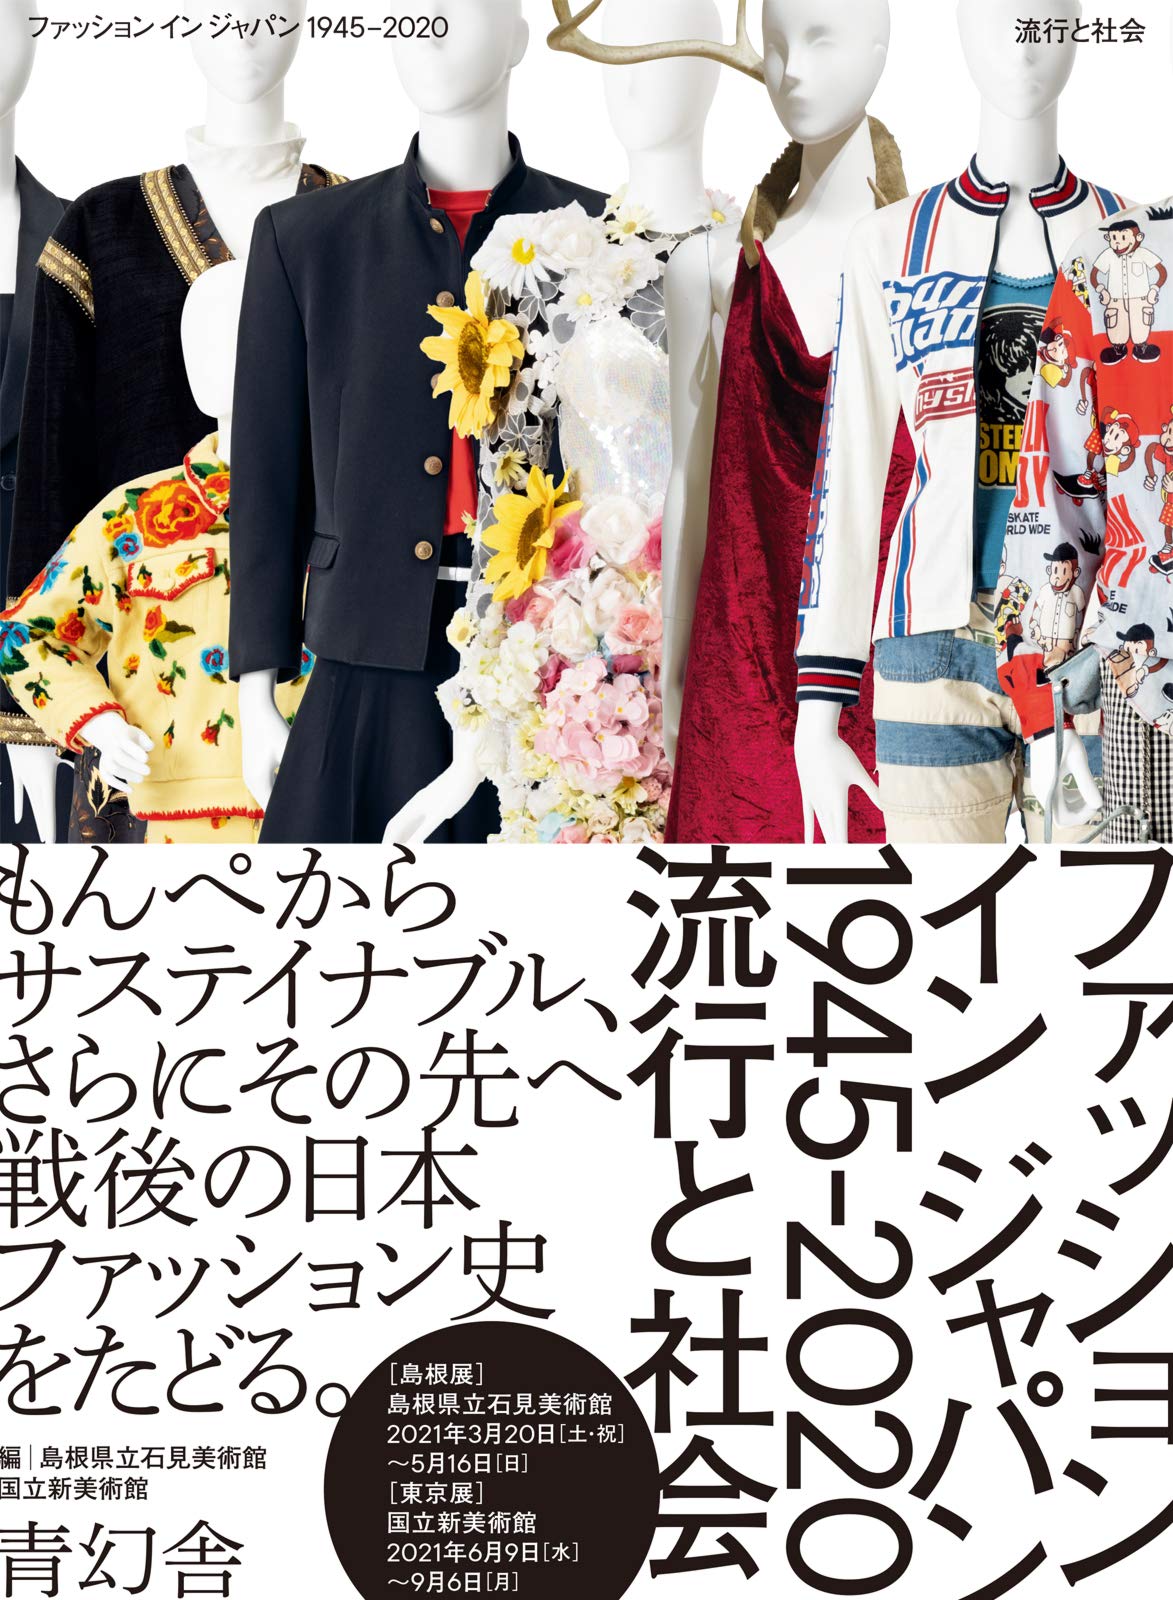 国立新美術館・島根県立石見美術館（2021）『ファッション イン ジャパン 1945-2020 流行と社会』青幻舎